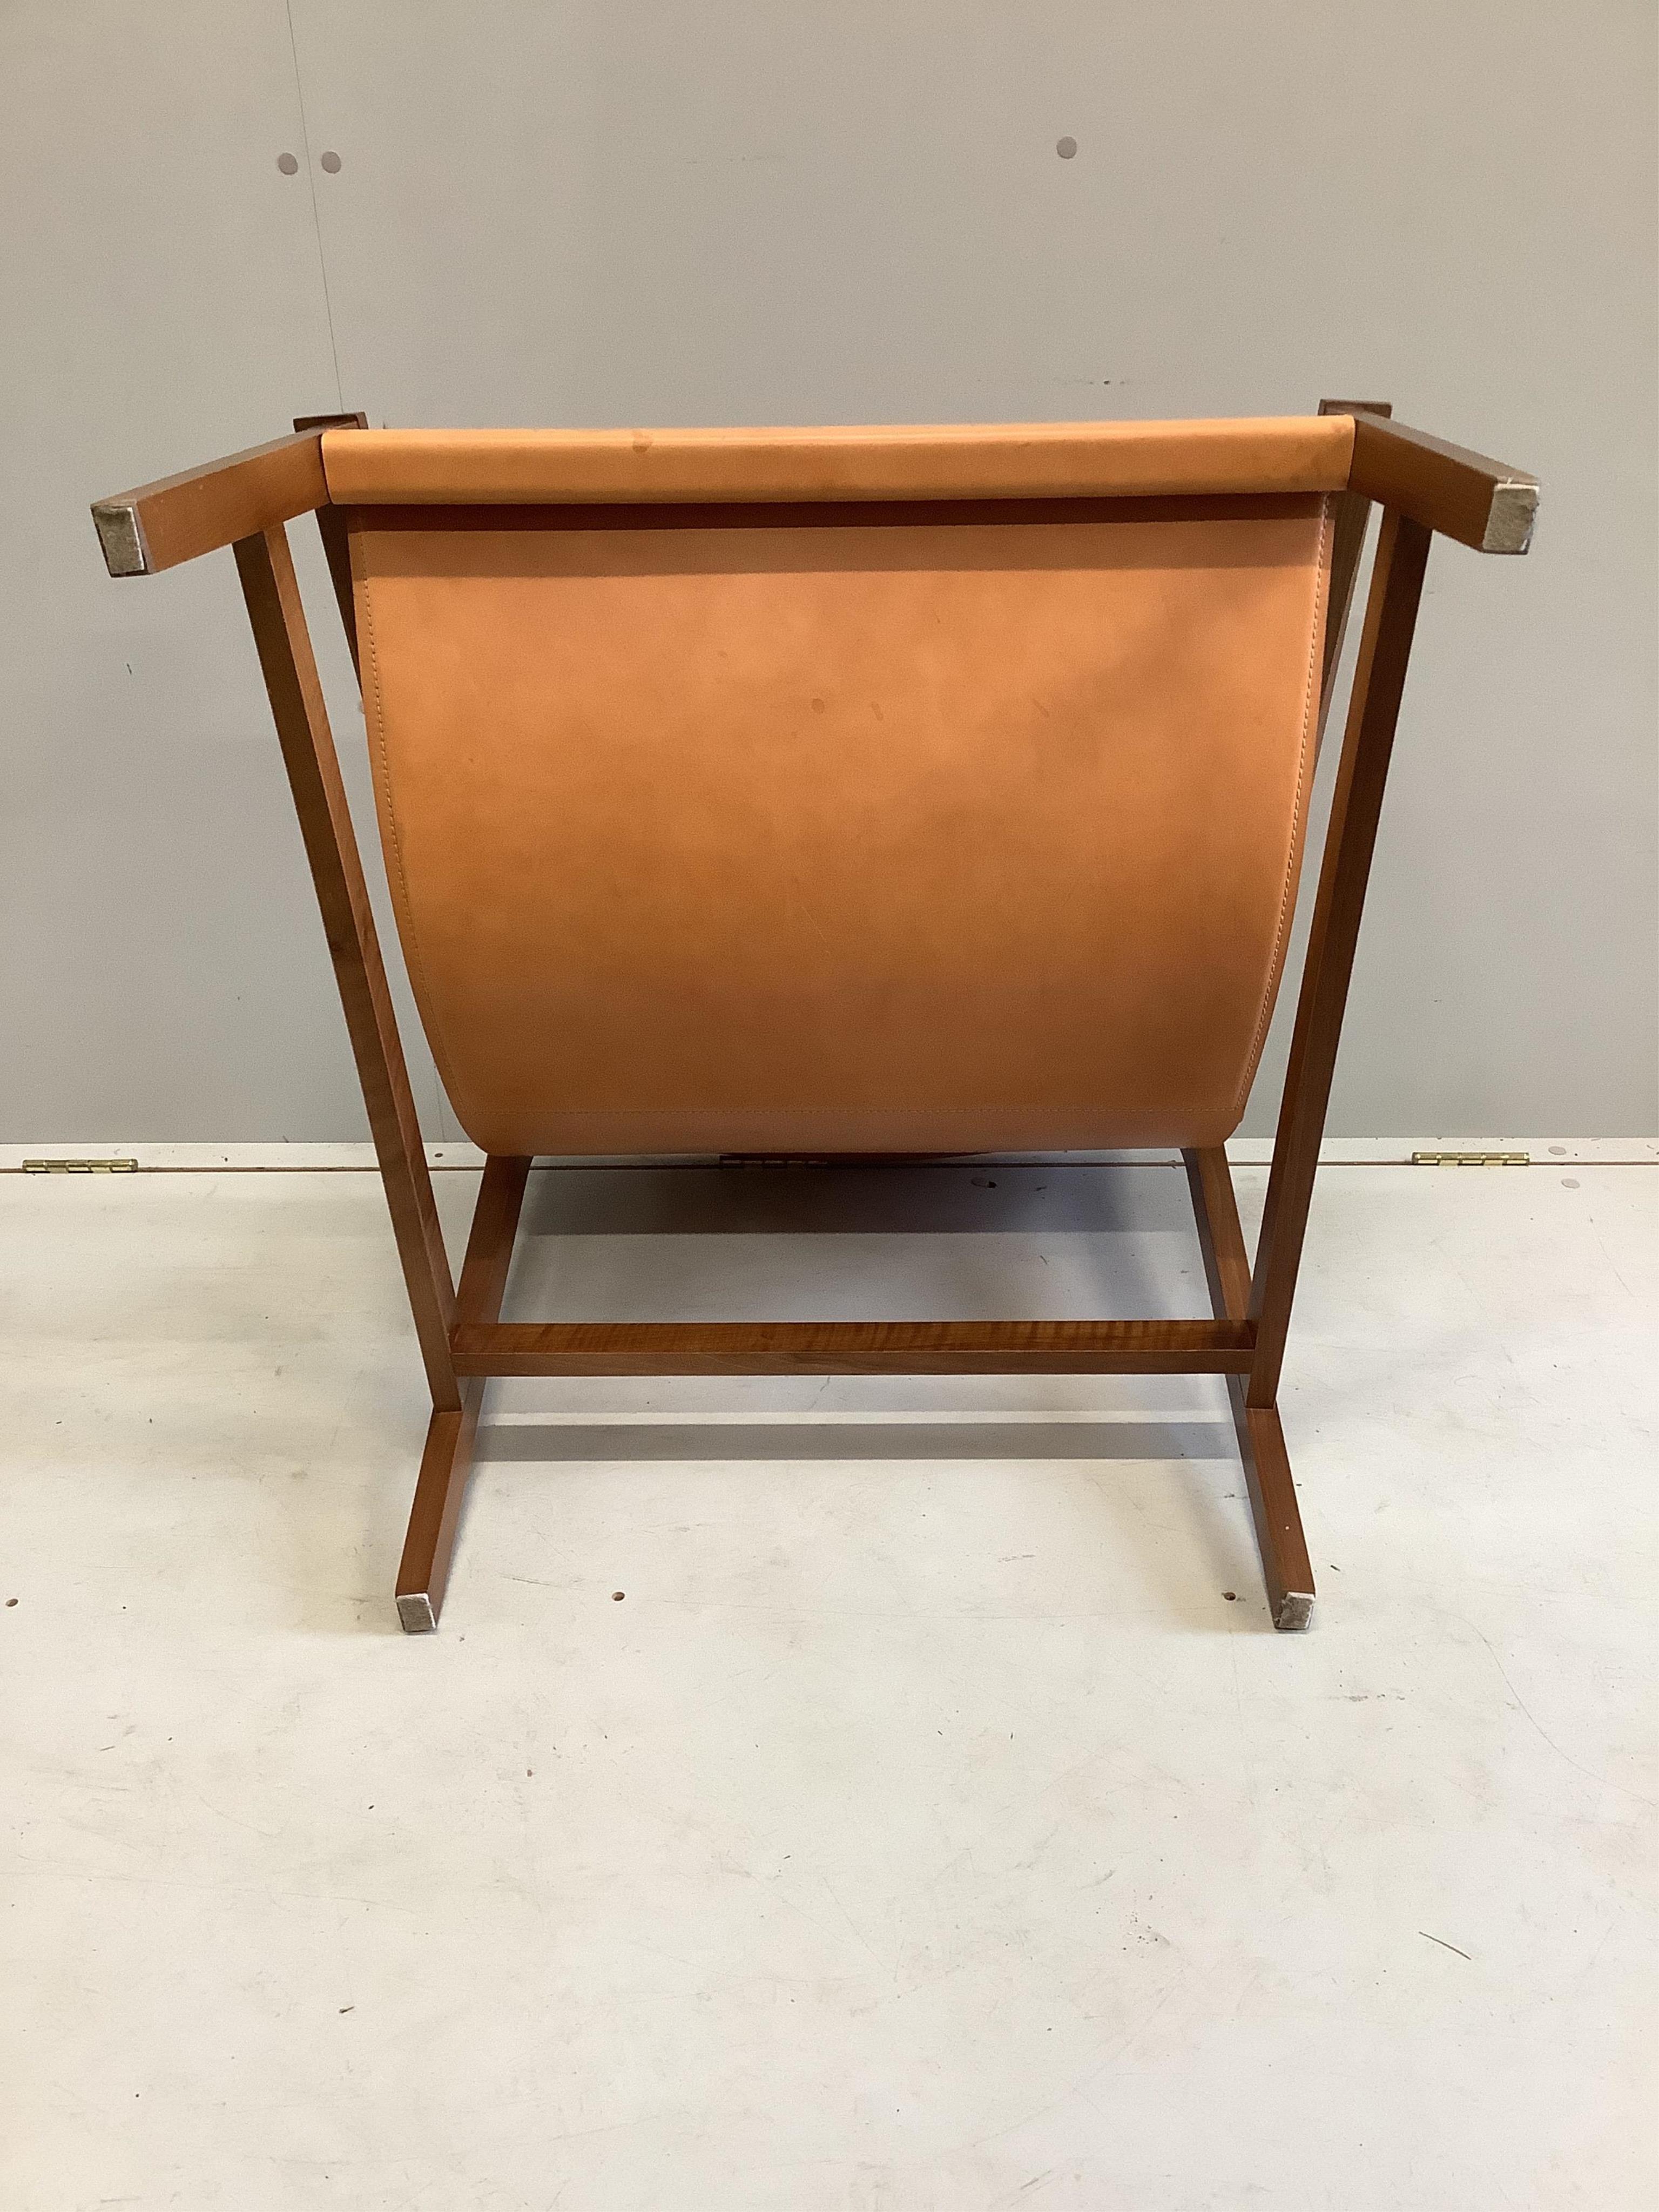 A Sdraio Chair by Living Divani, width 77cm, depth 74cm, height 66cm